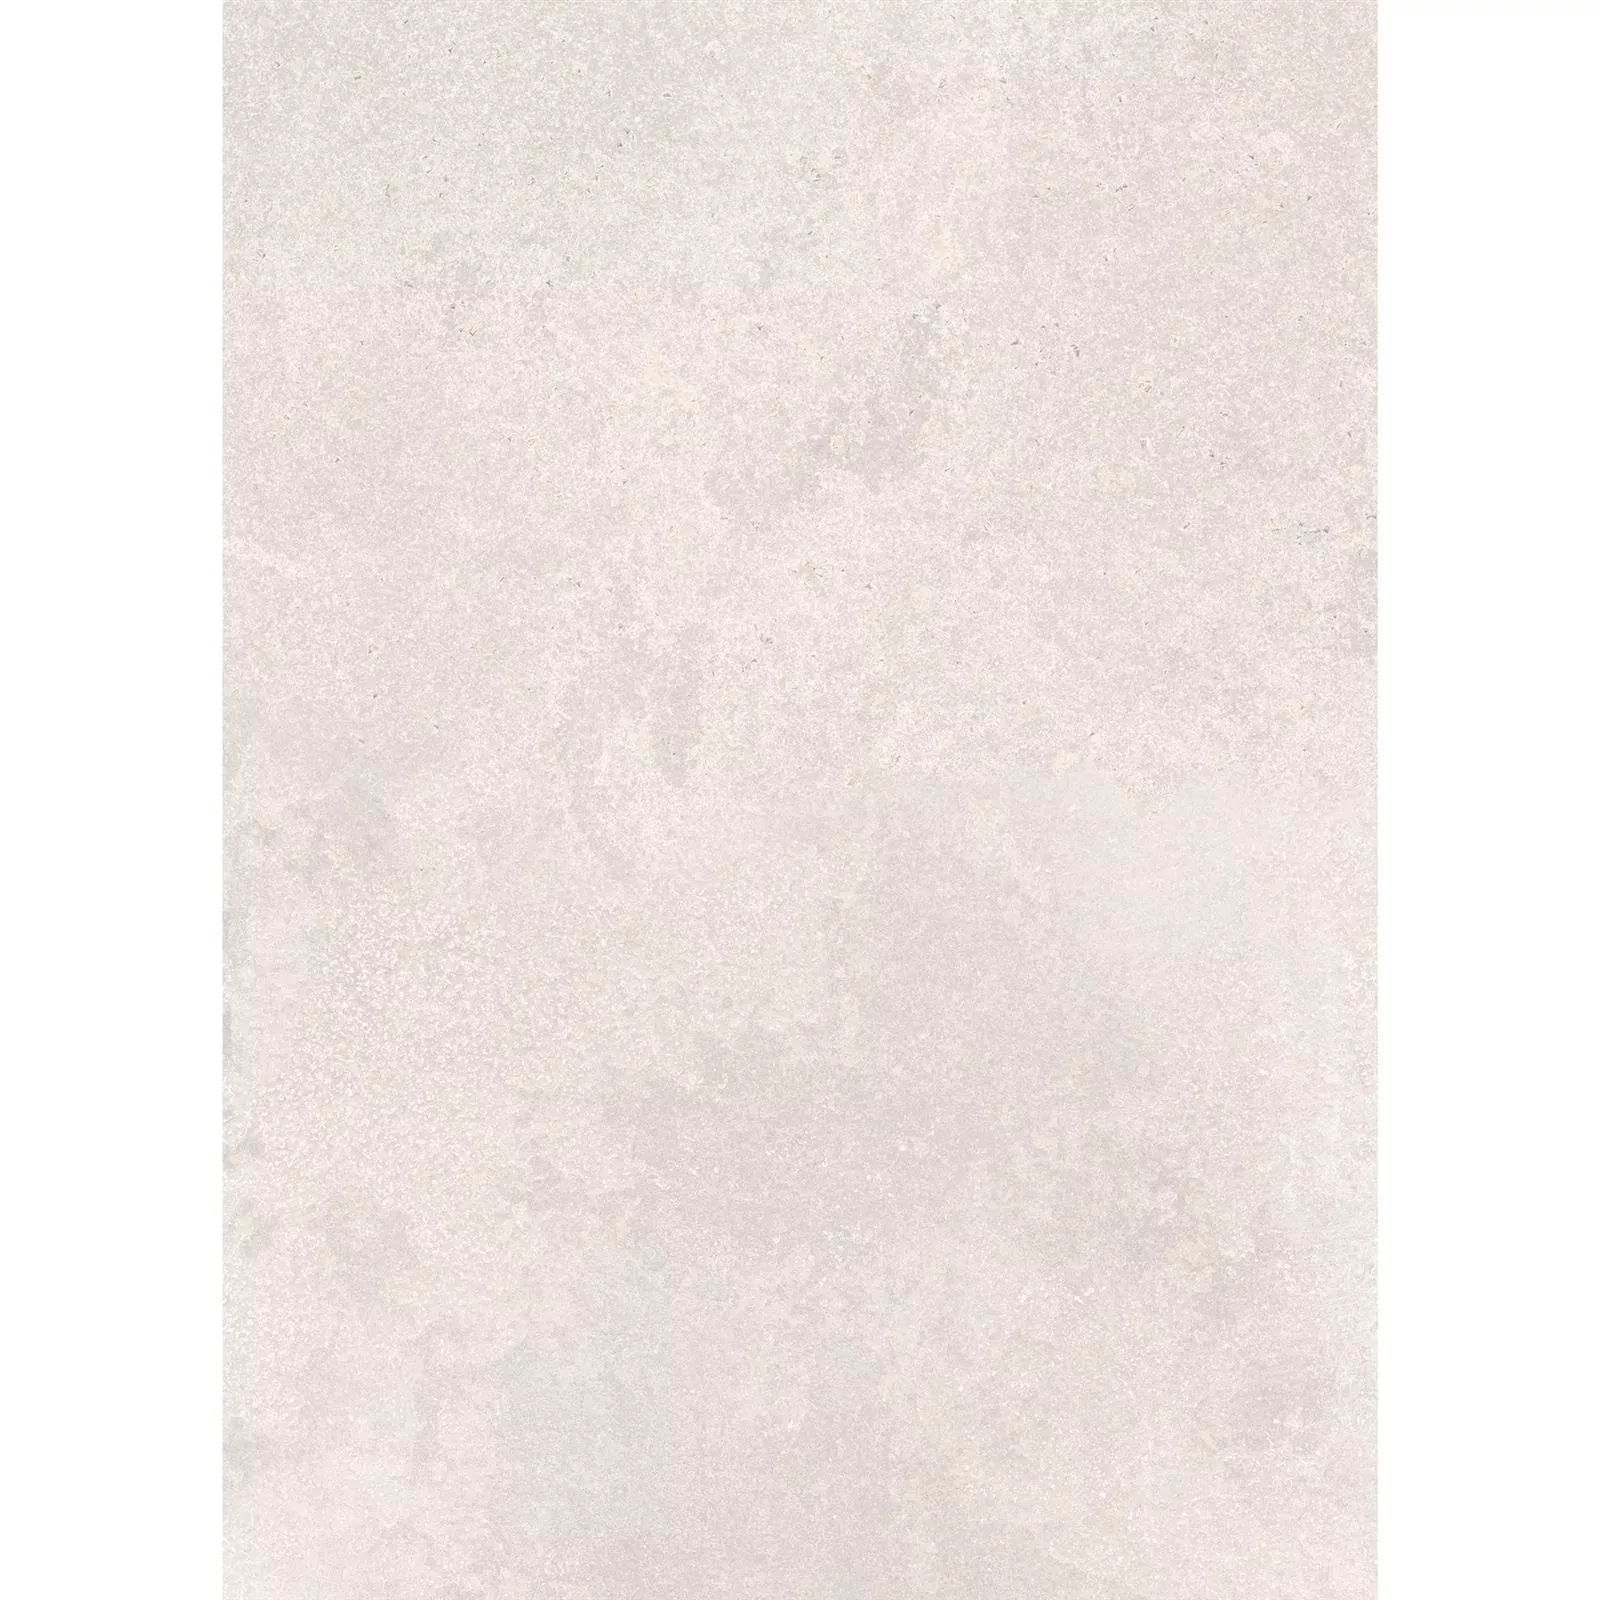 Podlahové Dlaždice Kámen Vzhled Horizon Béžová 60x120cm